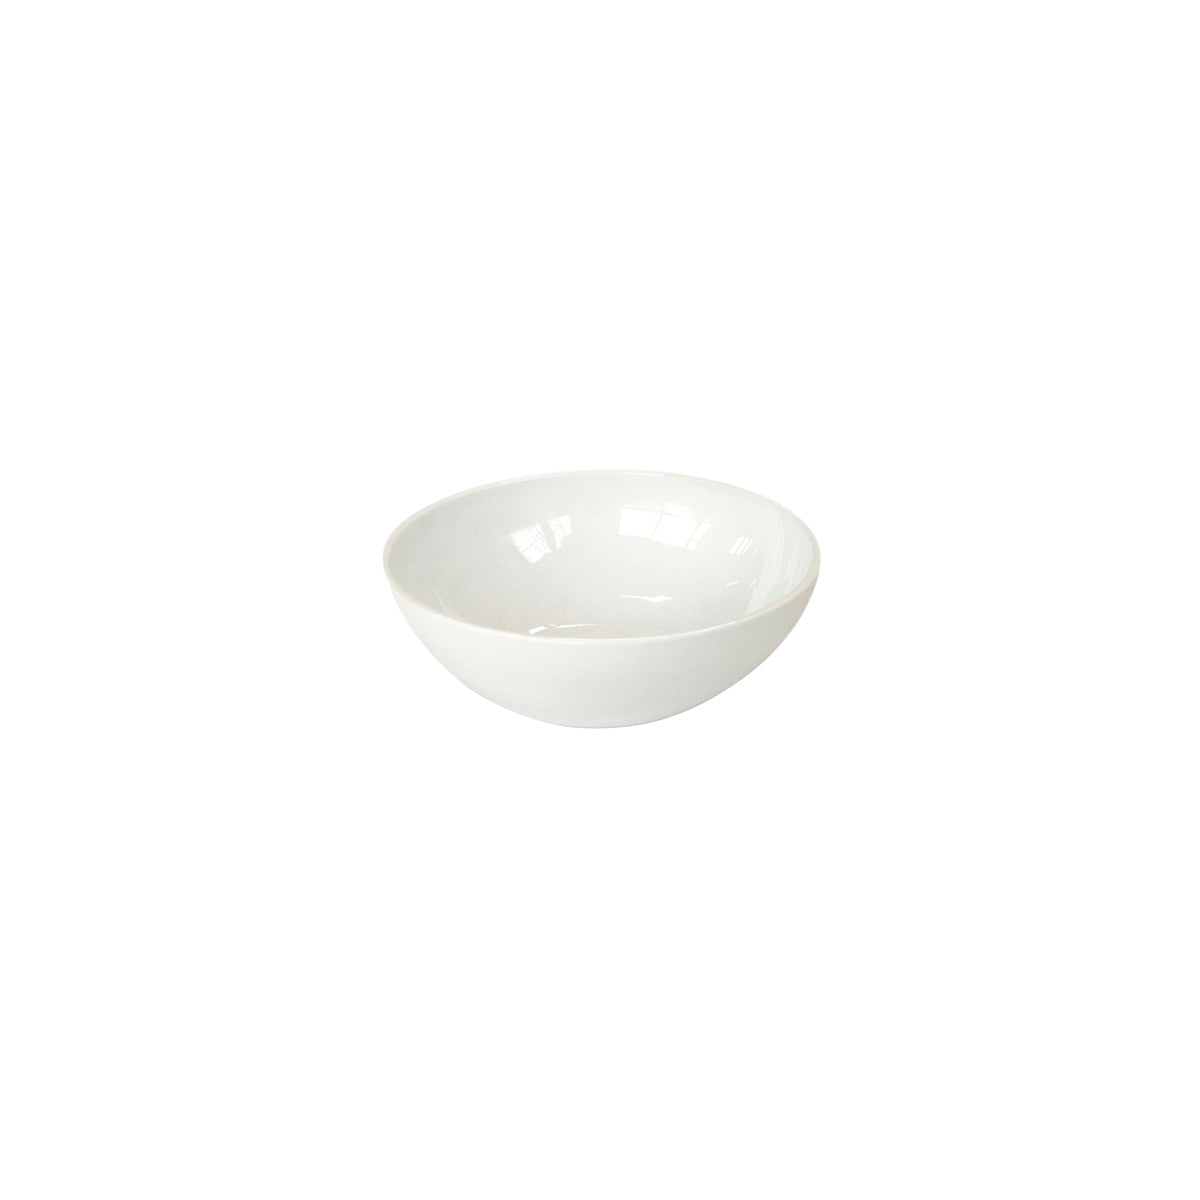 CRASTERBWCR1702 Craster Craster Tilt White Ceramic Bowl Medium 250x85mm / 2Lt Tomkin Australia Hospitality Supplies